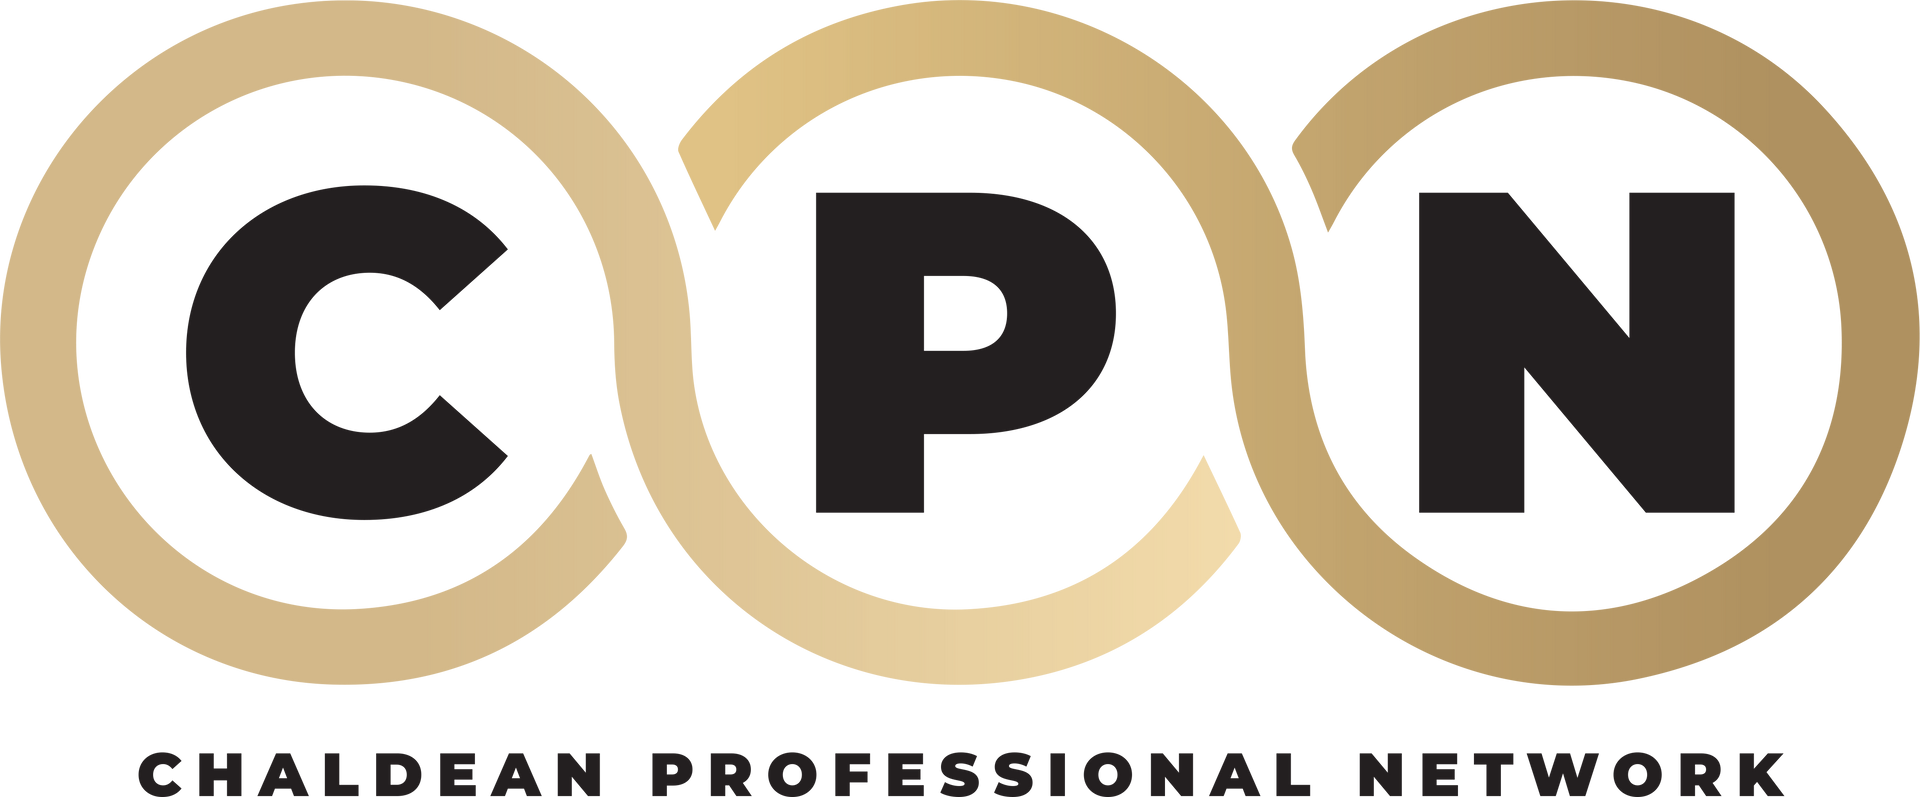 CPN-Logo